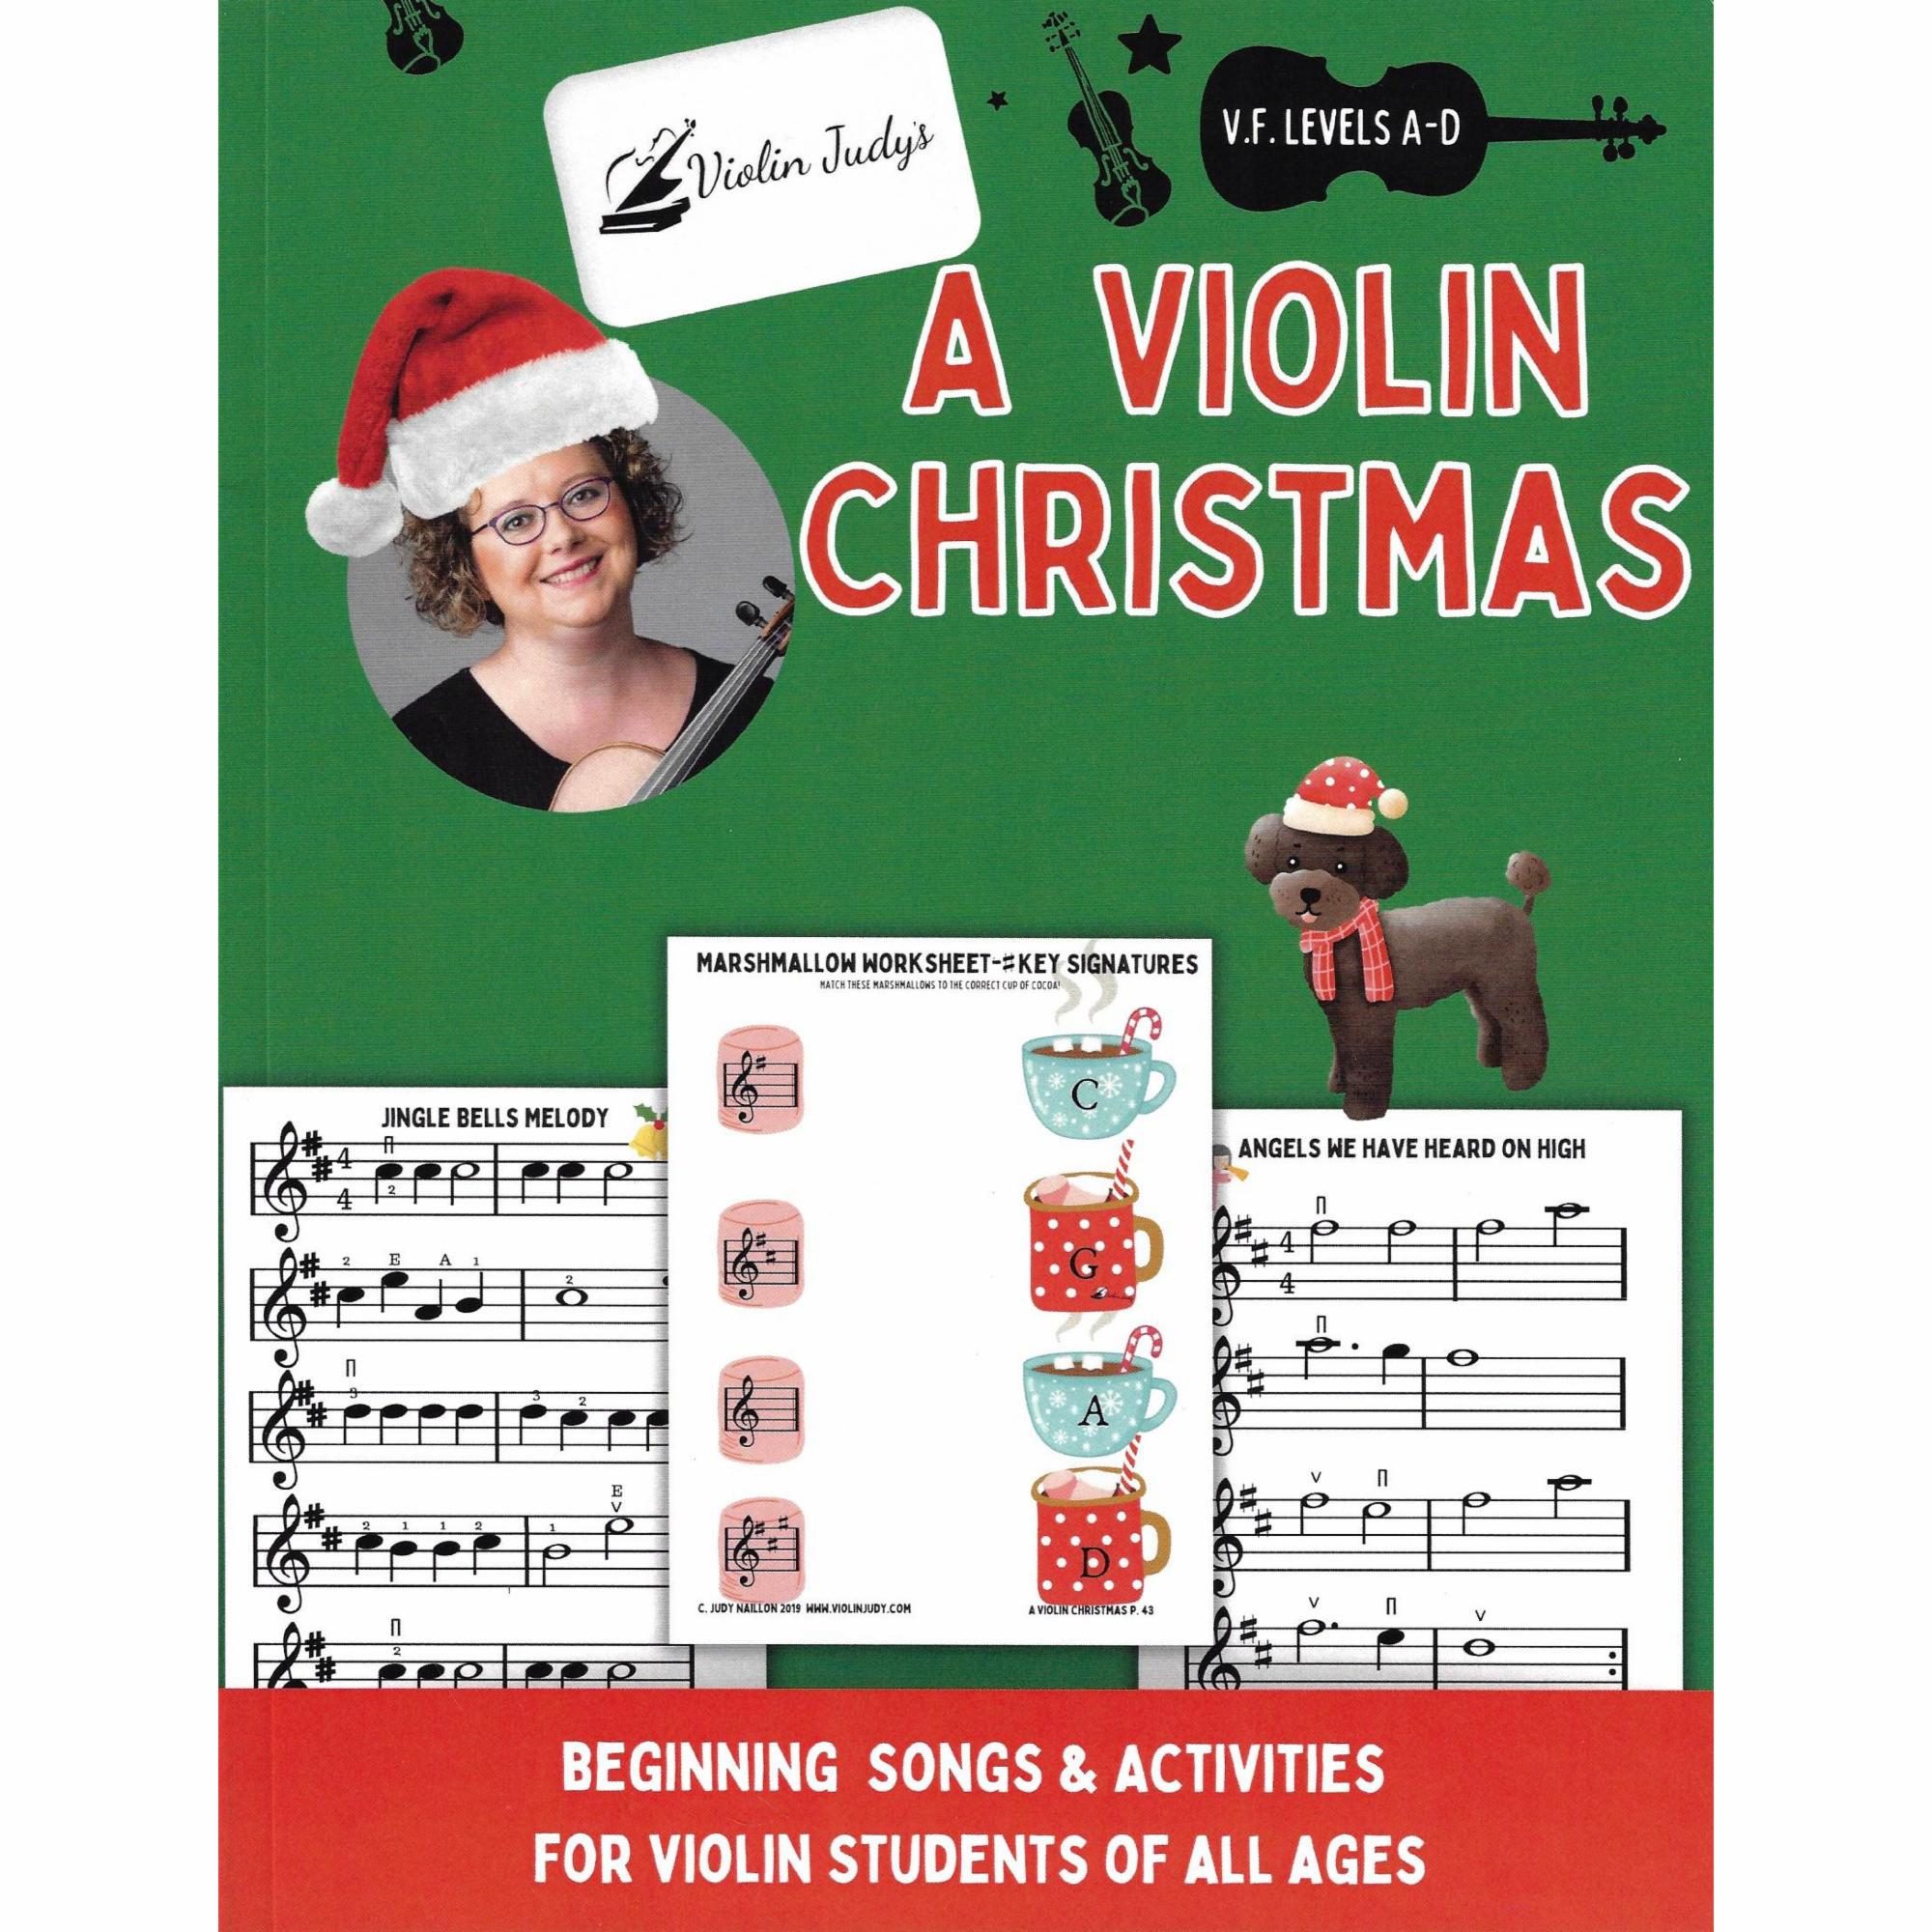 Violin Judy's A Violin Christmas